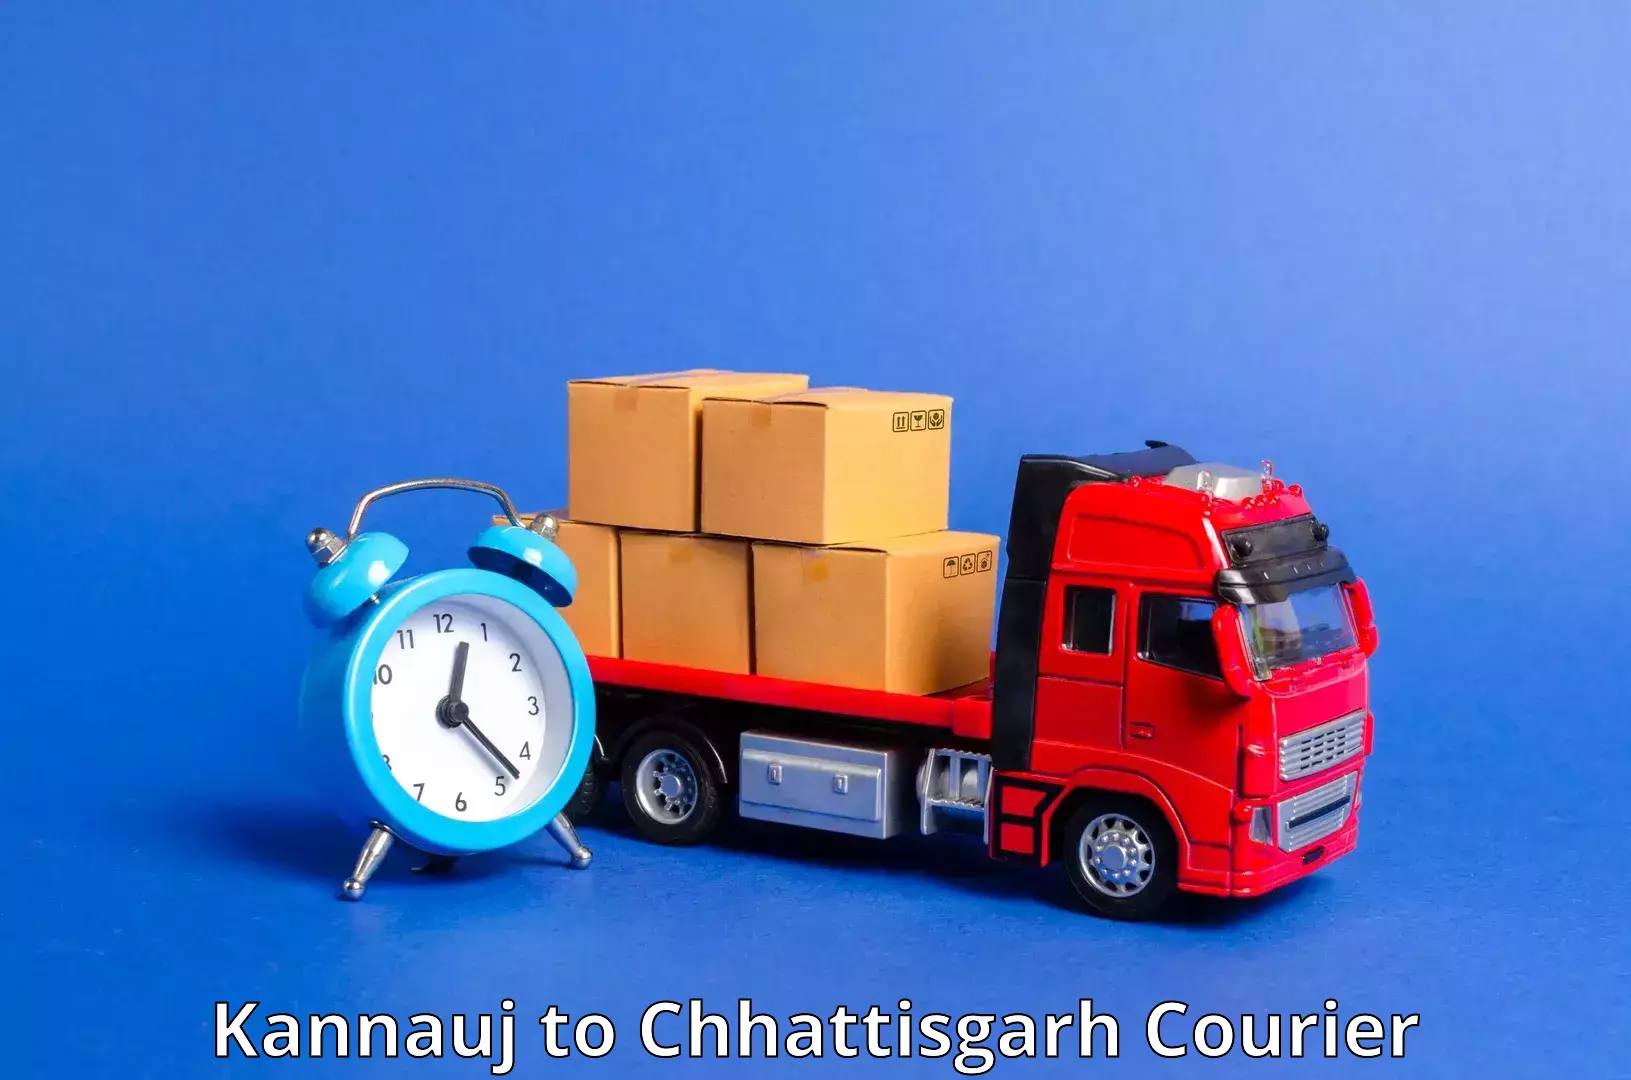 Efficient package consolidation Kannauj to Bijapur Chhattisgarh